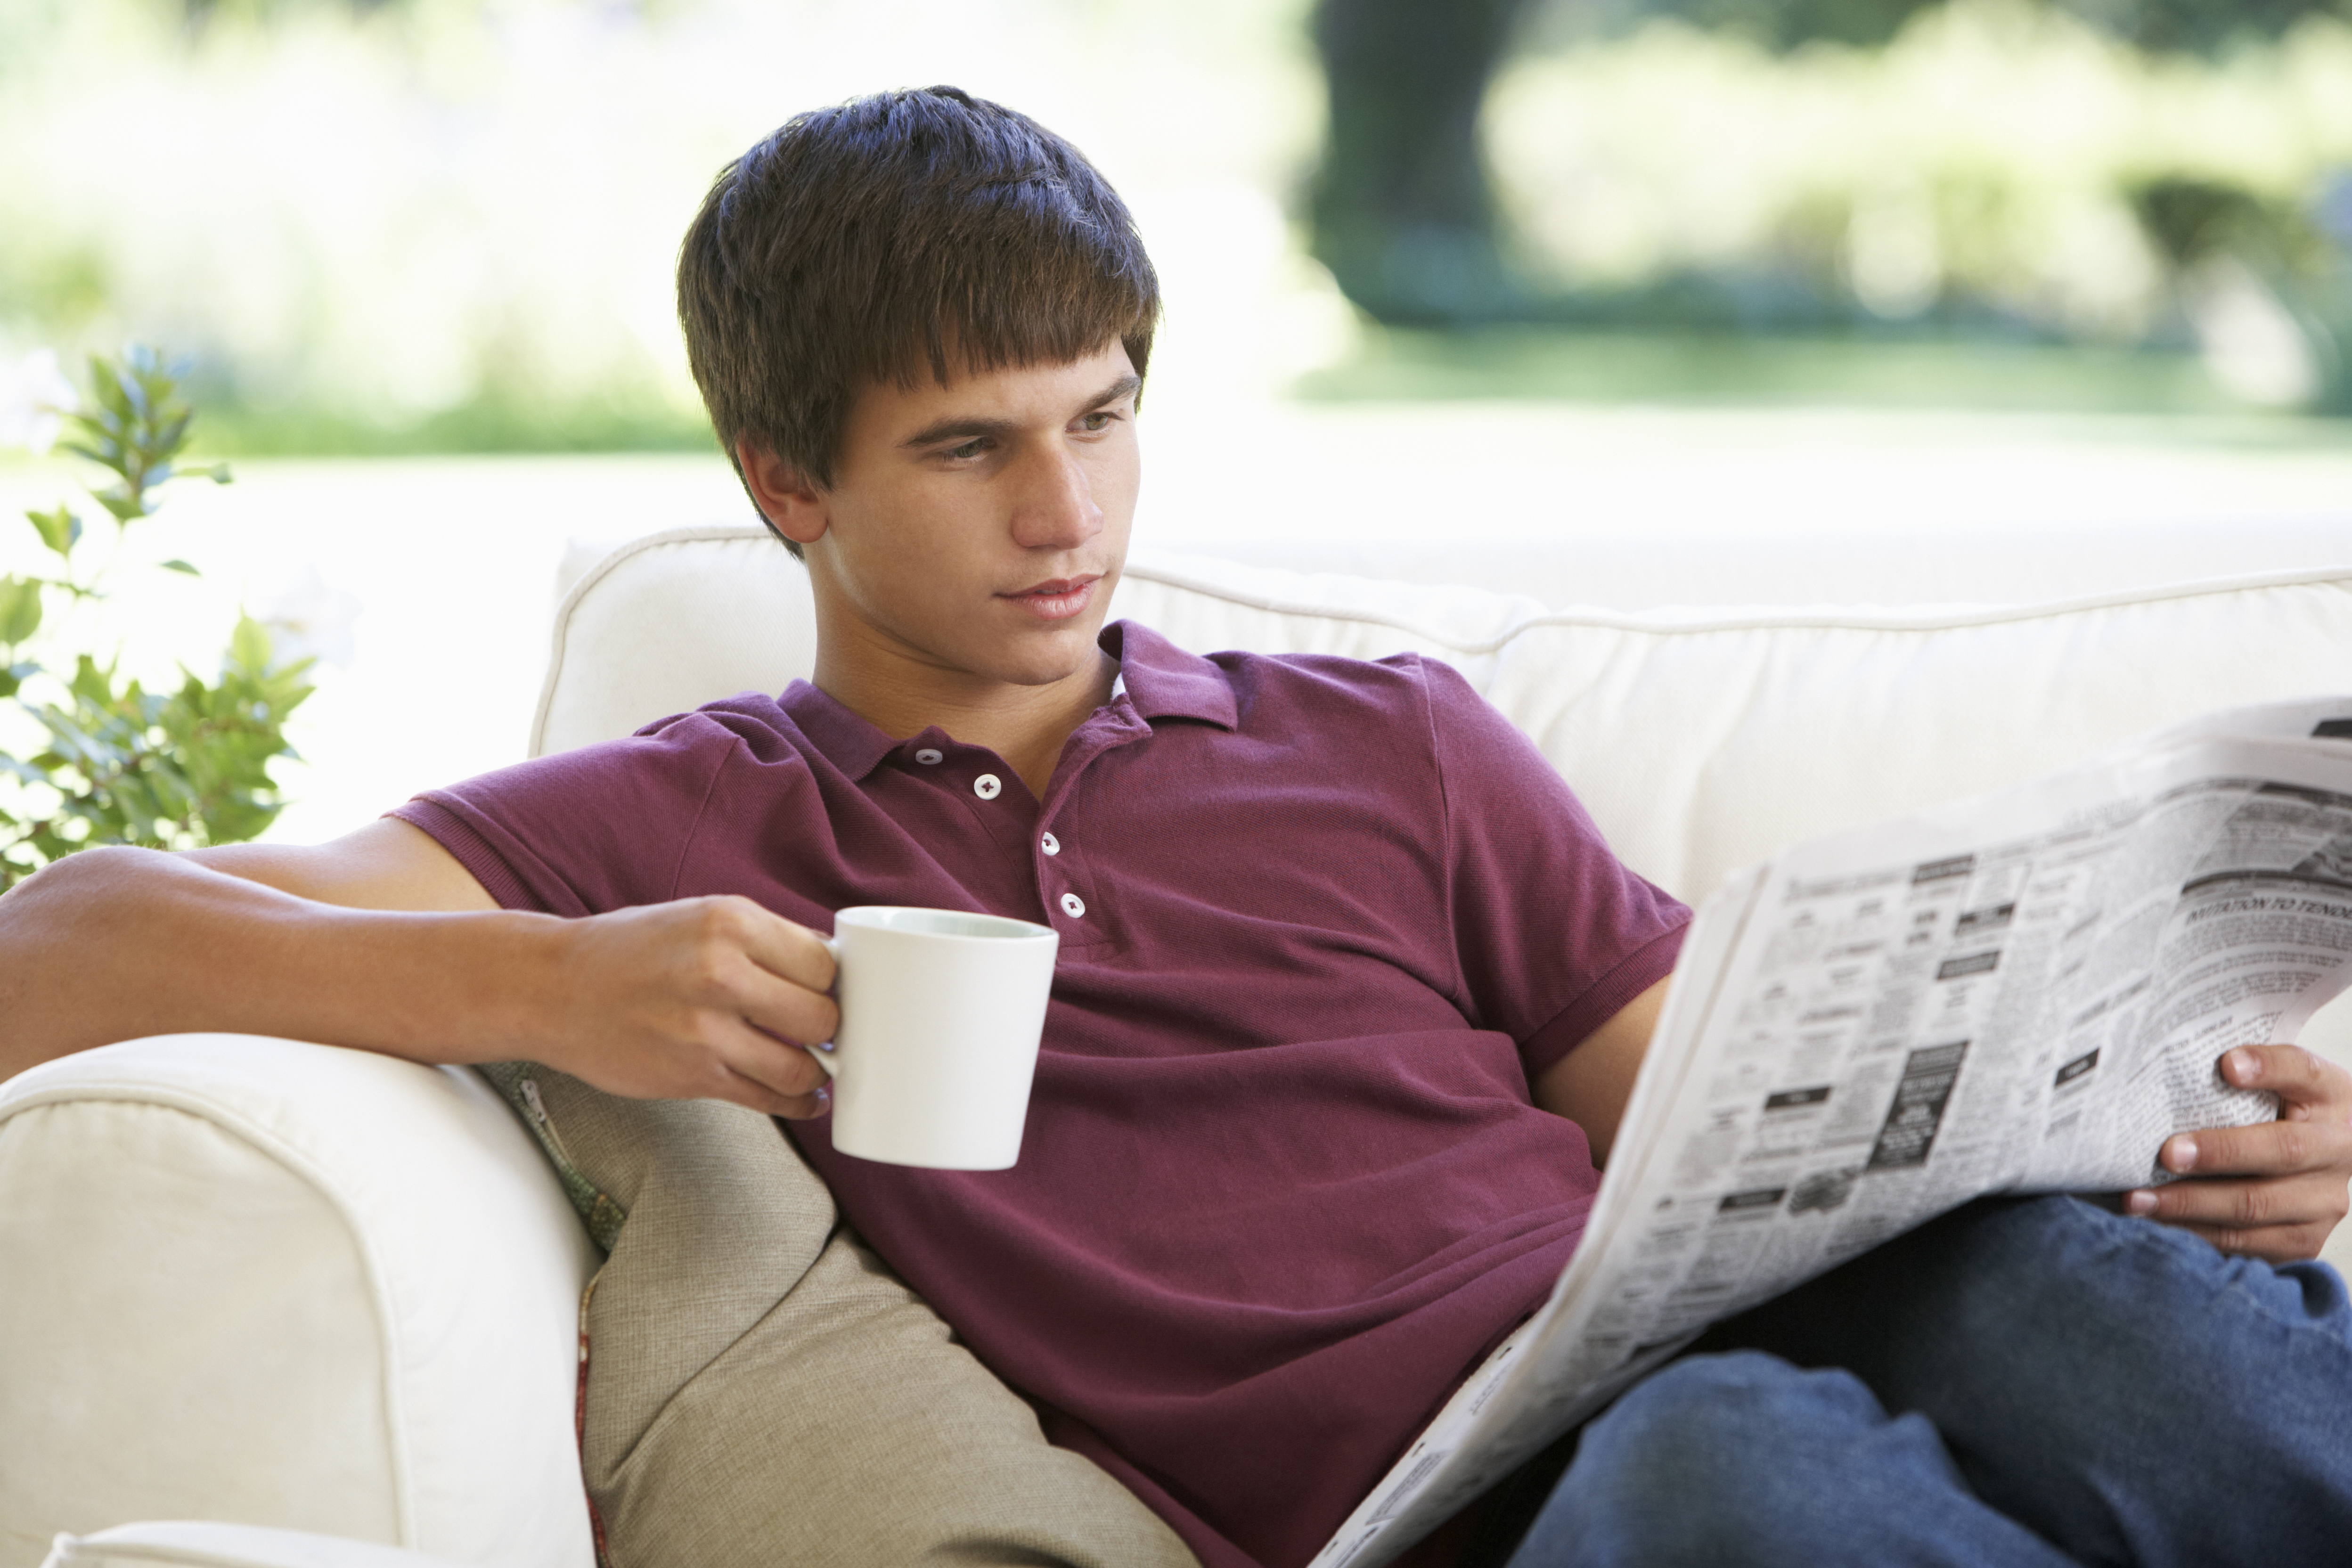 A teenage boy reads a newspaper | Source: Shutterstock